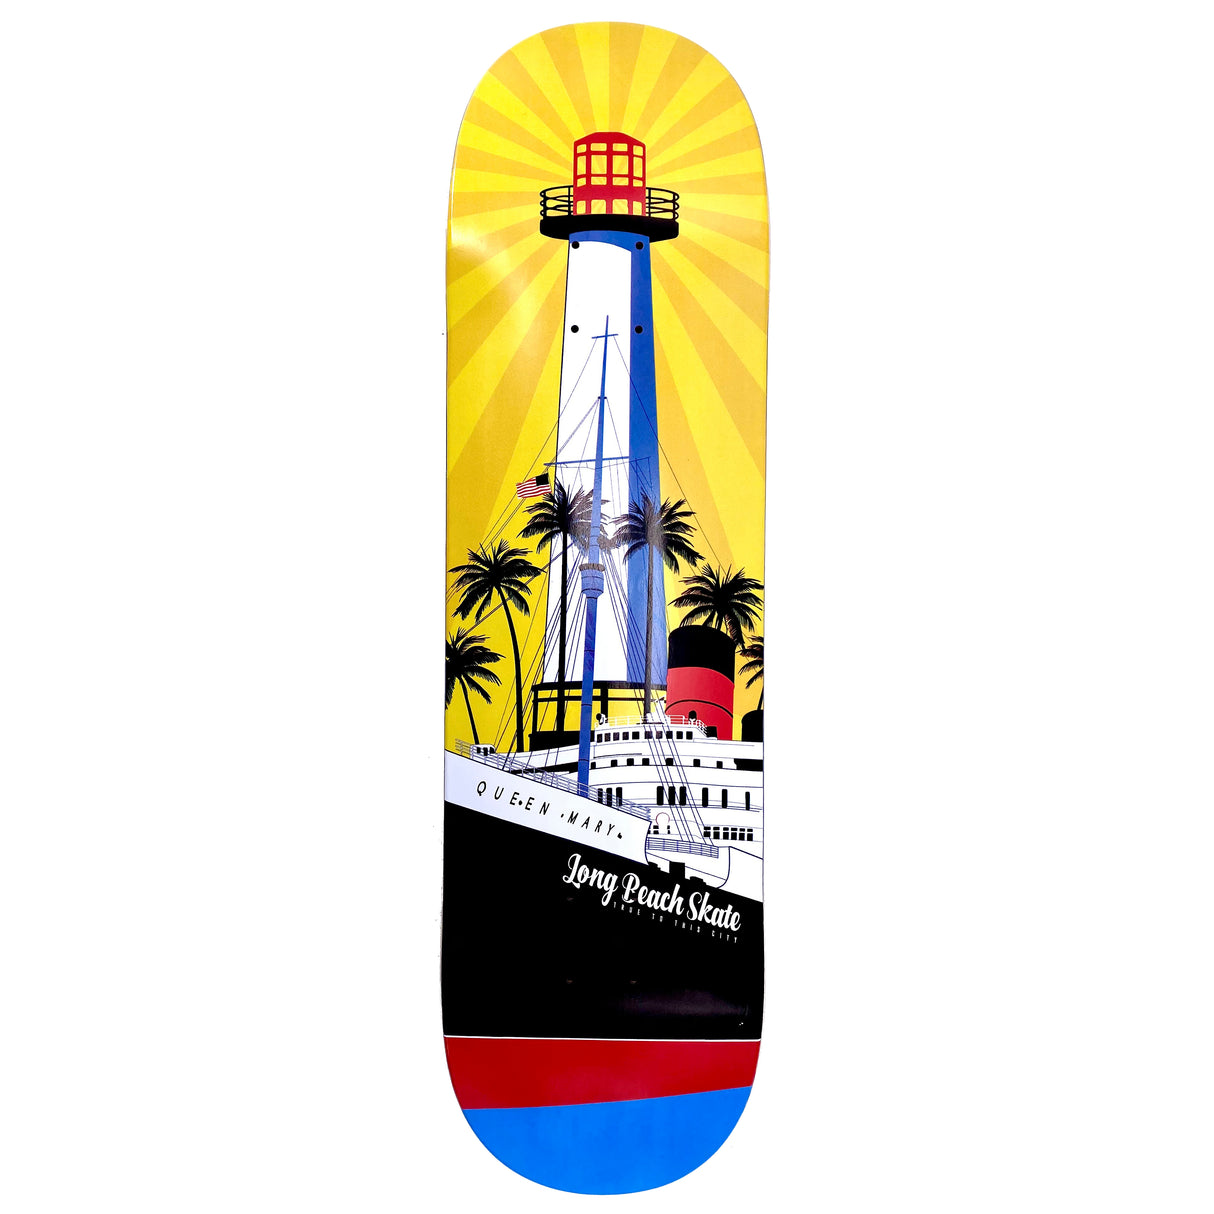 Long Beach Skate Co. "Rising Sun on Light Mary" Gold Red Blue 7.5" Skateboard Deck